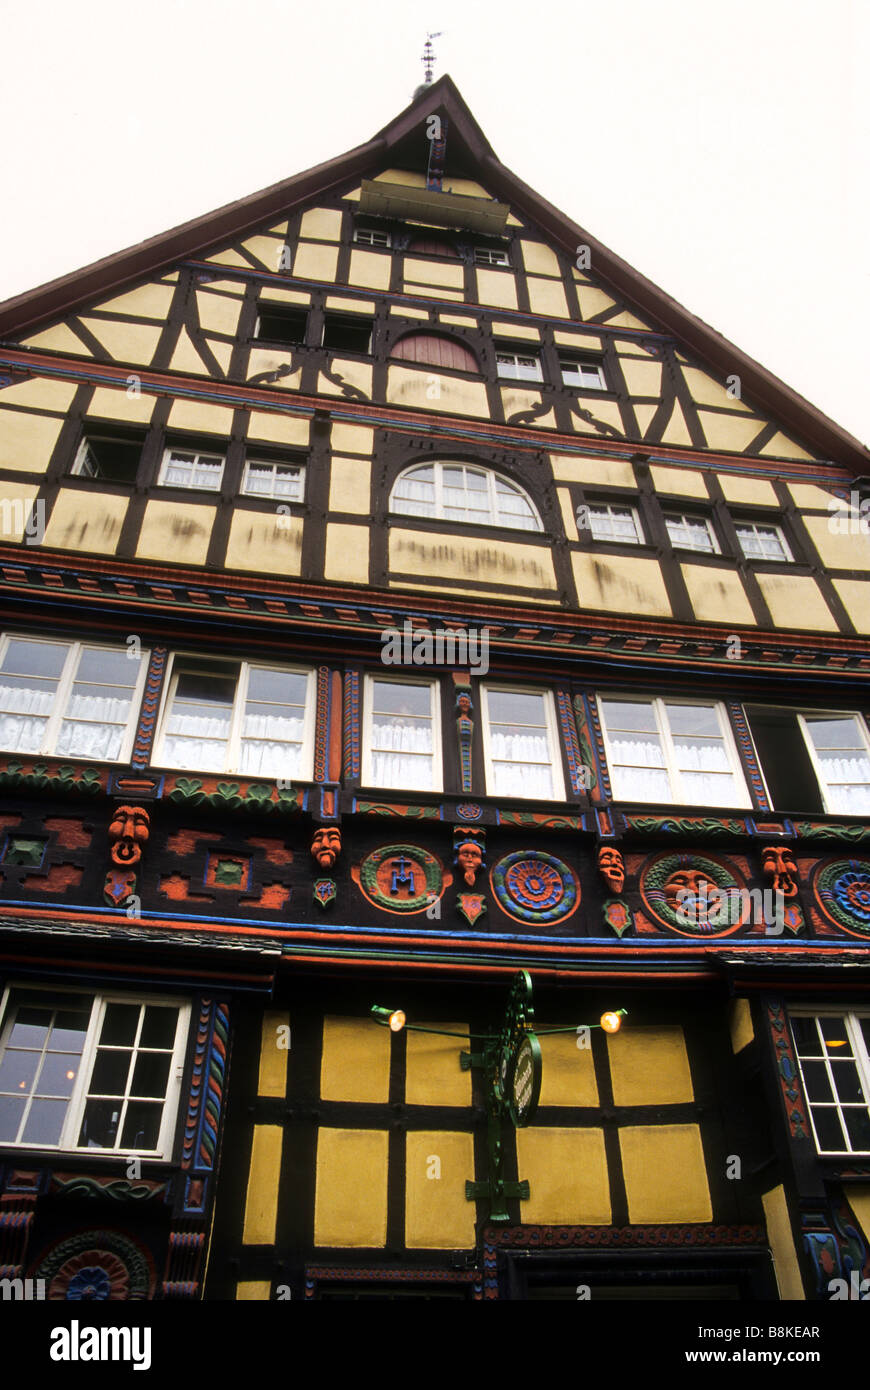 Bâtiment à colombages de style allemand luxe architecture ancienne ornée de l'ancienne Swiss Austrian Banque D'Images